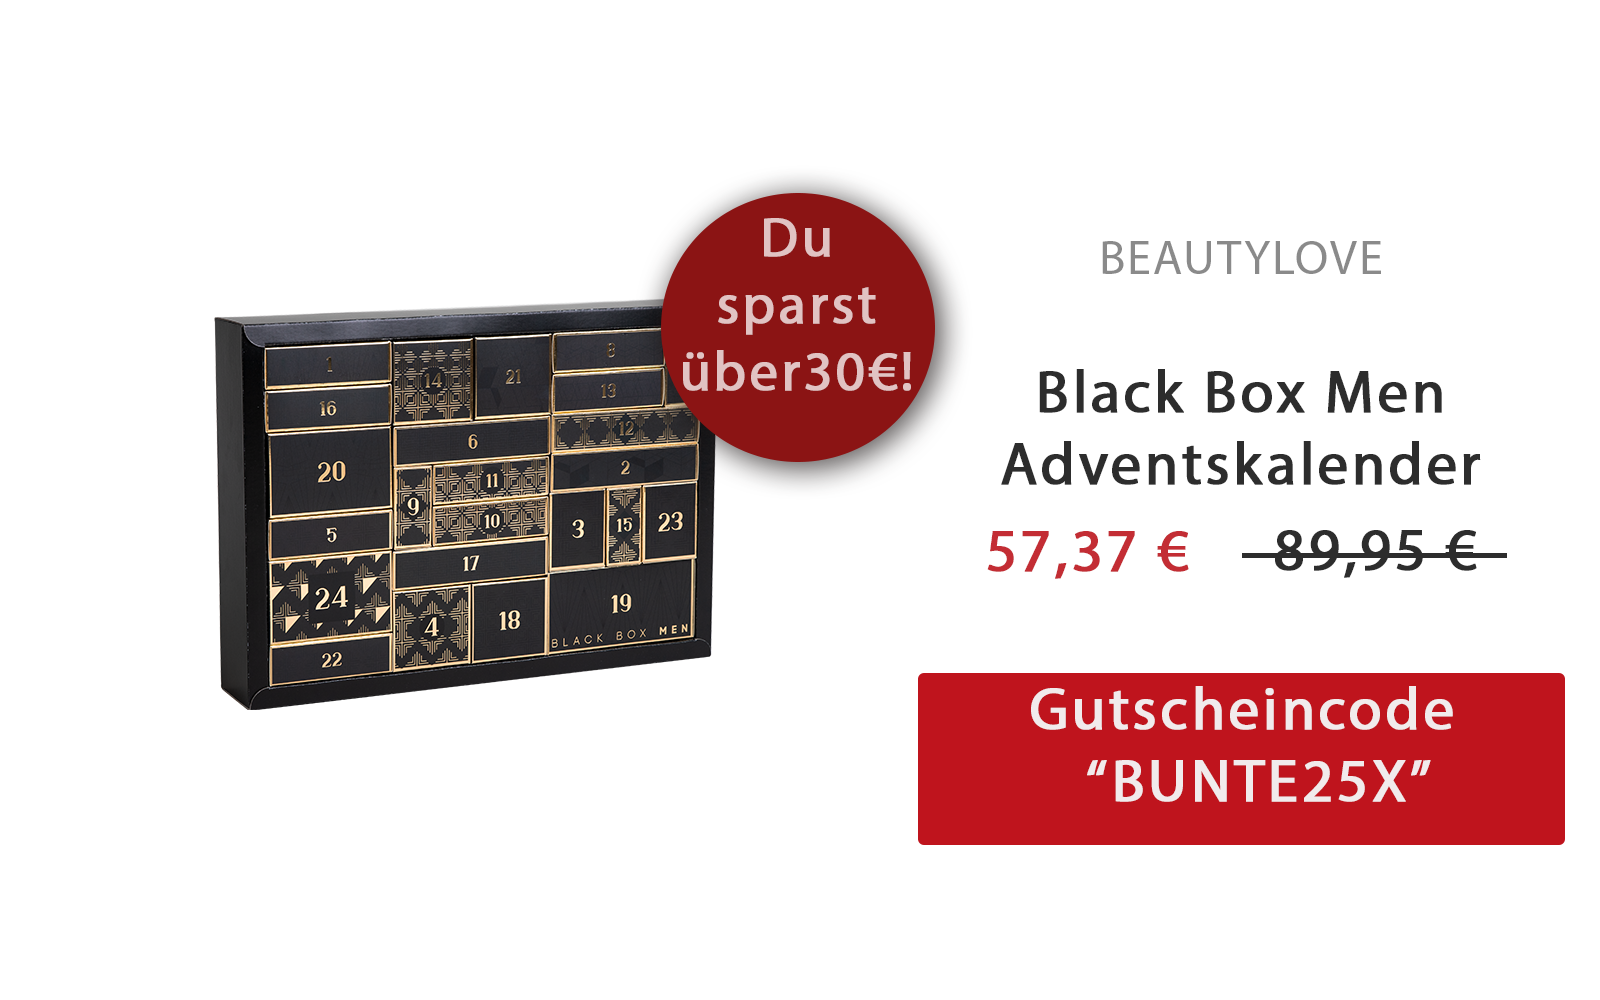 Spare jetzt über 30 Euro auf den Black Box Men Adventskalender